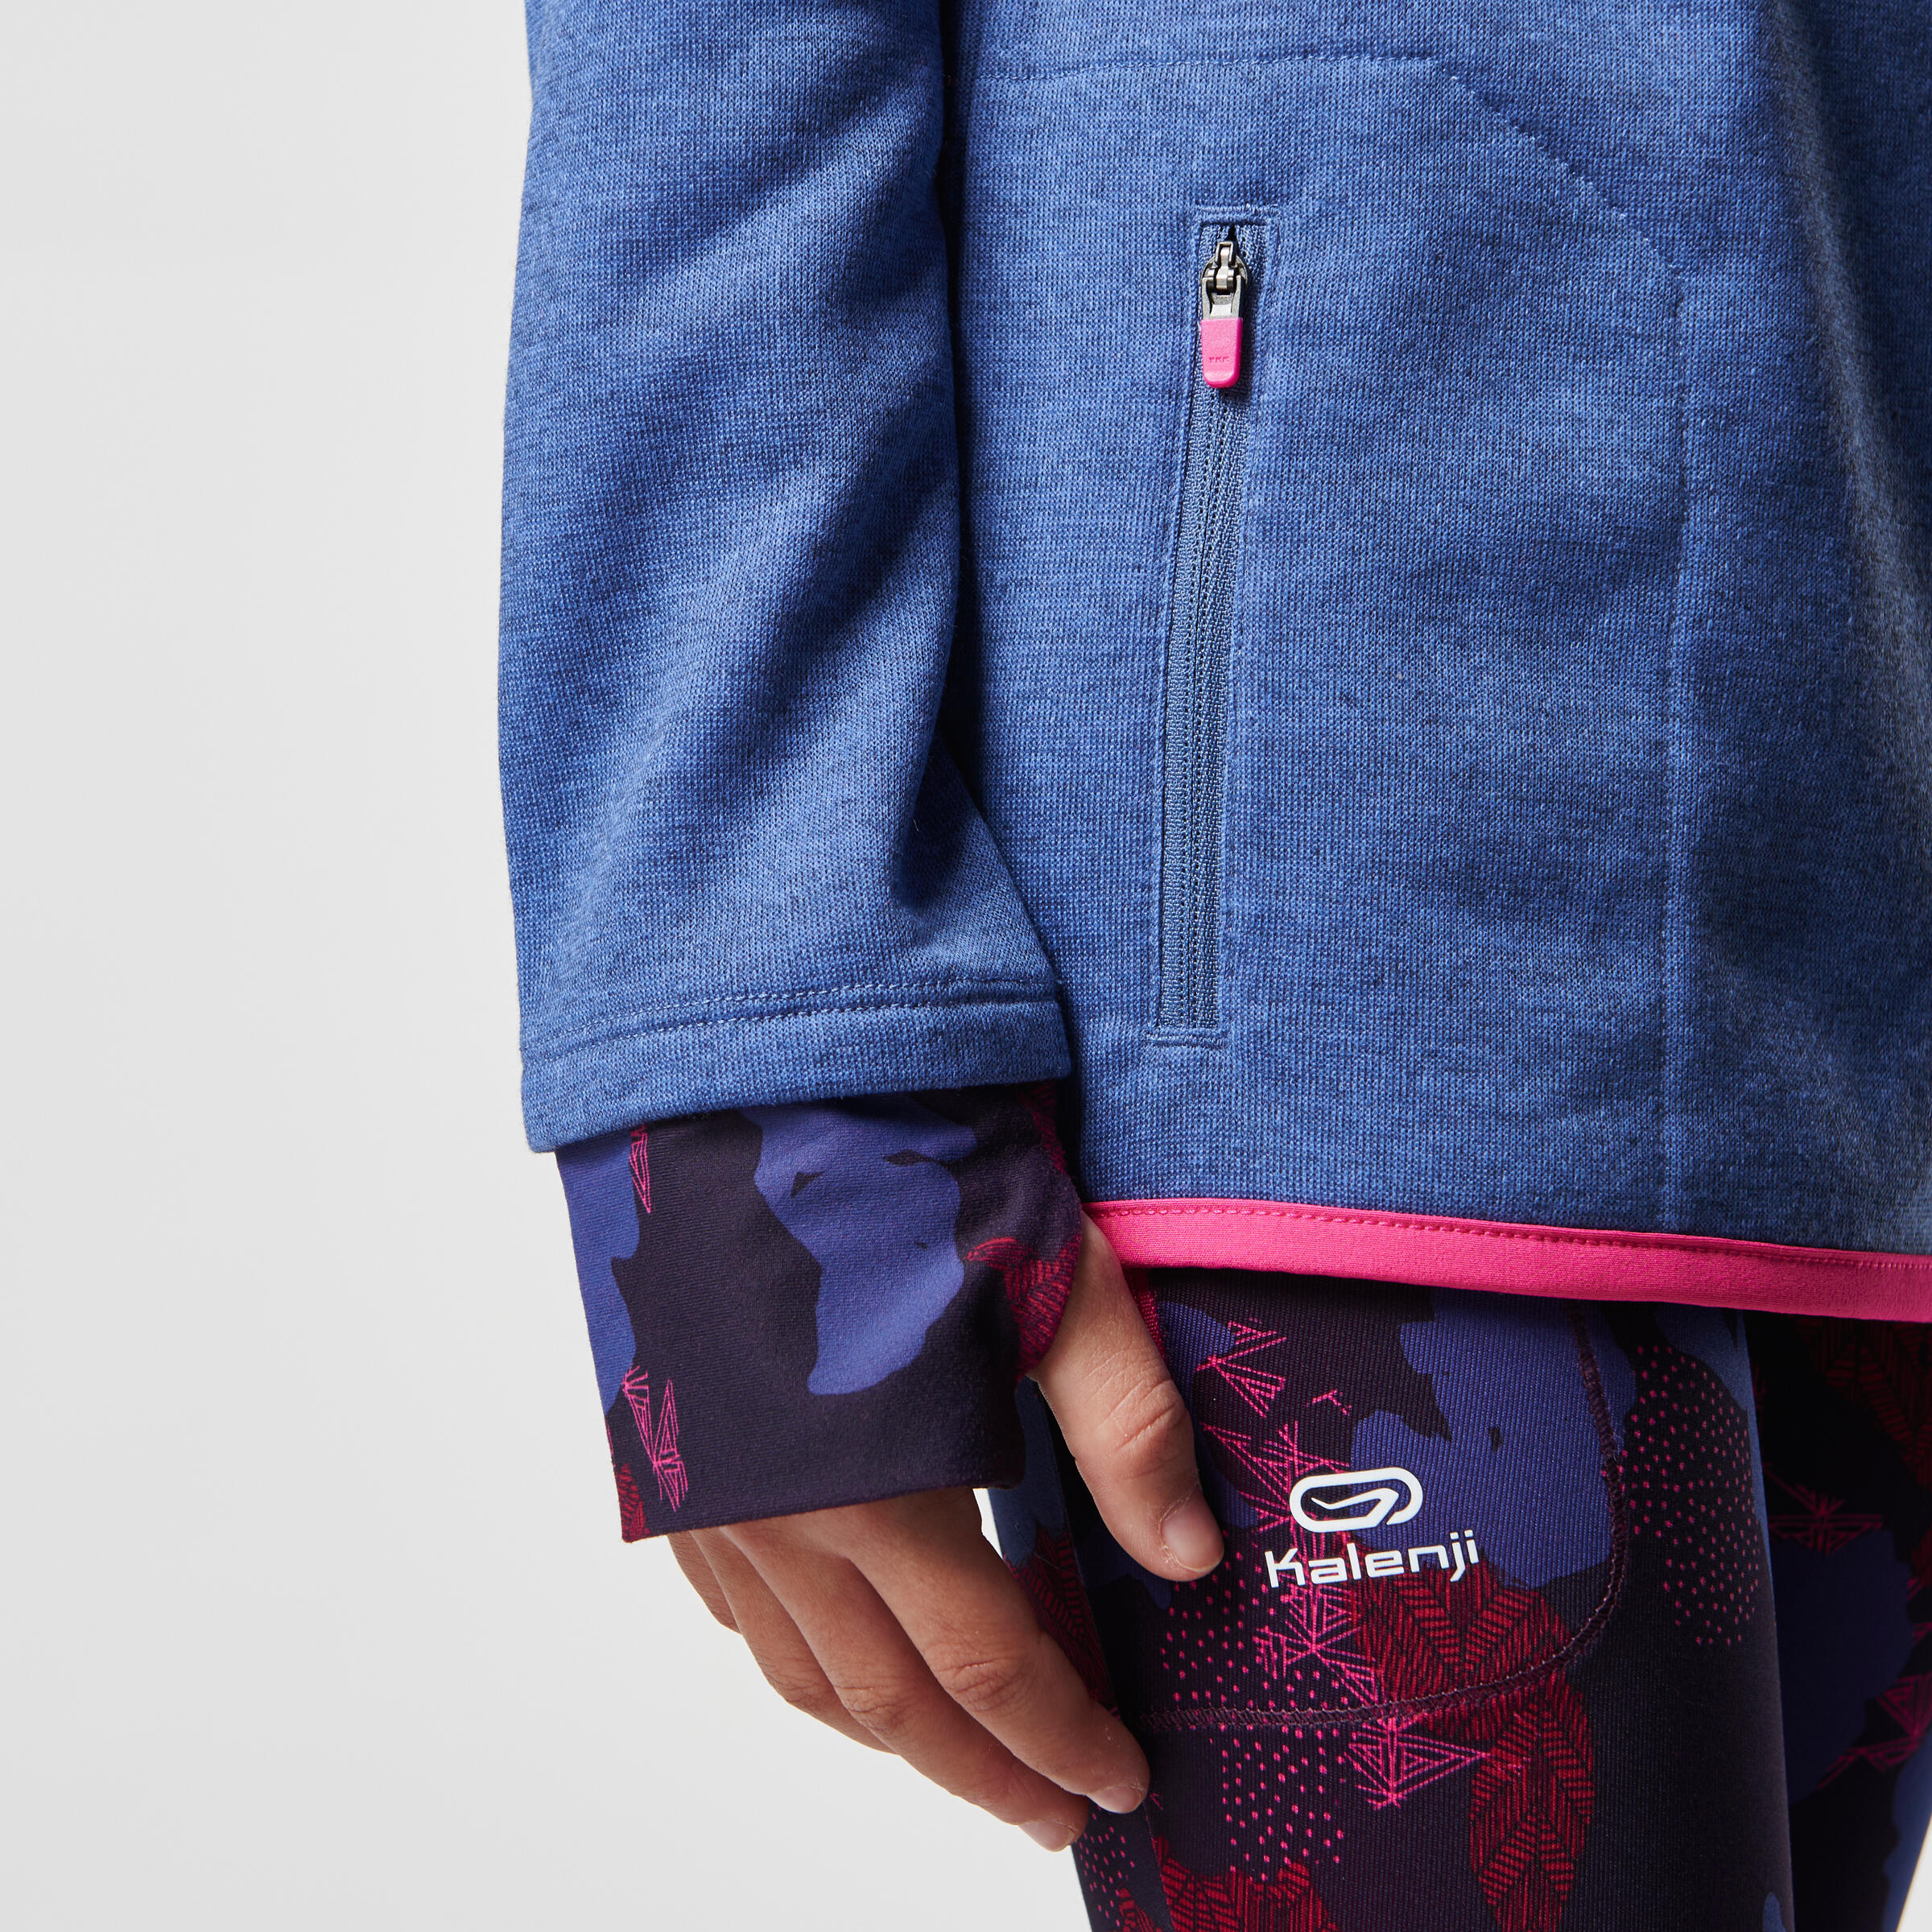 Elio Children's Running Hooded Jersey - Pink/Blue
 10/16